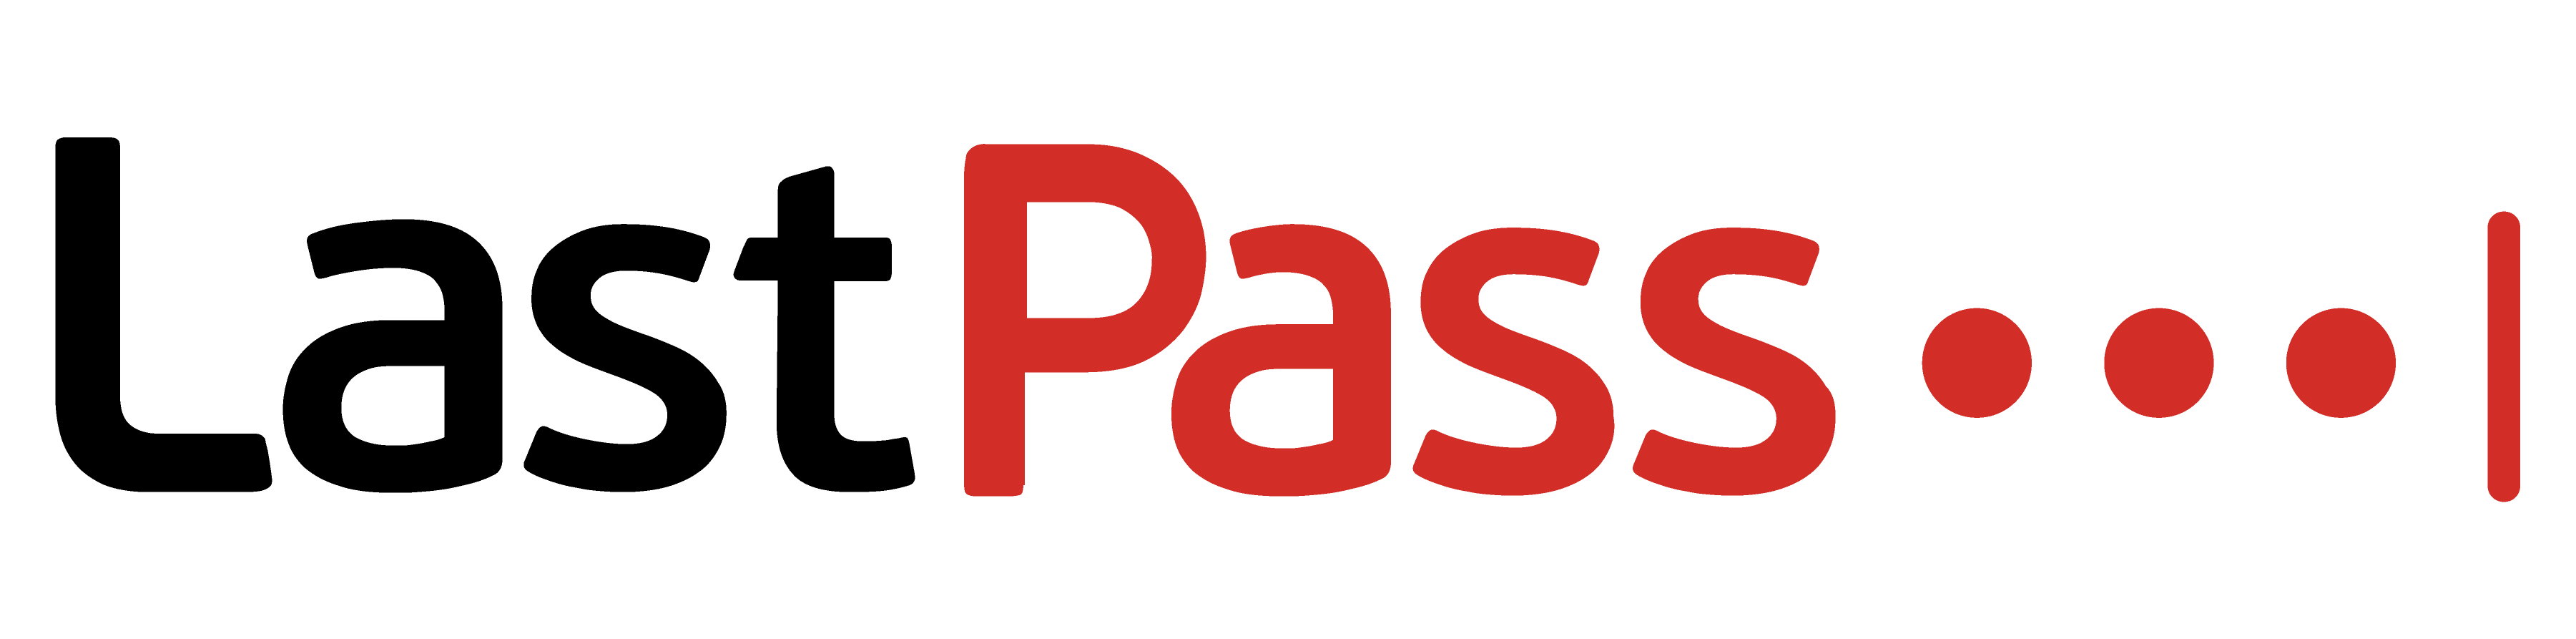 LastPass logo colors